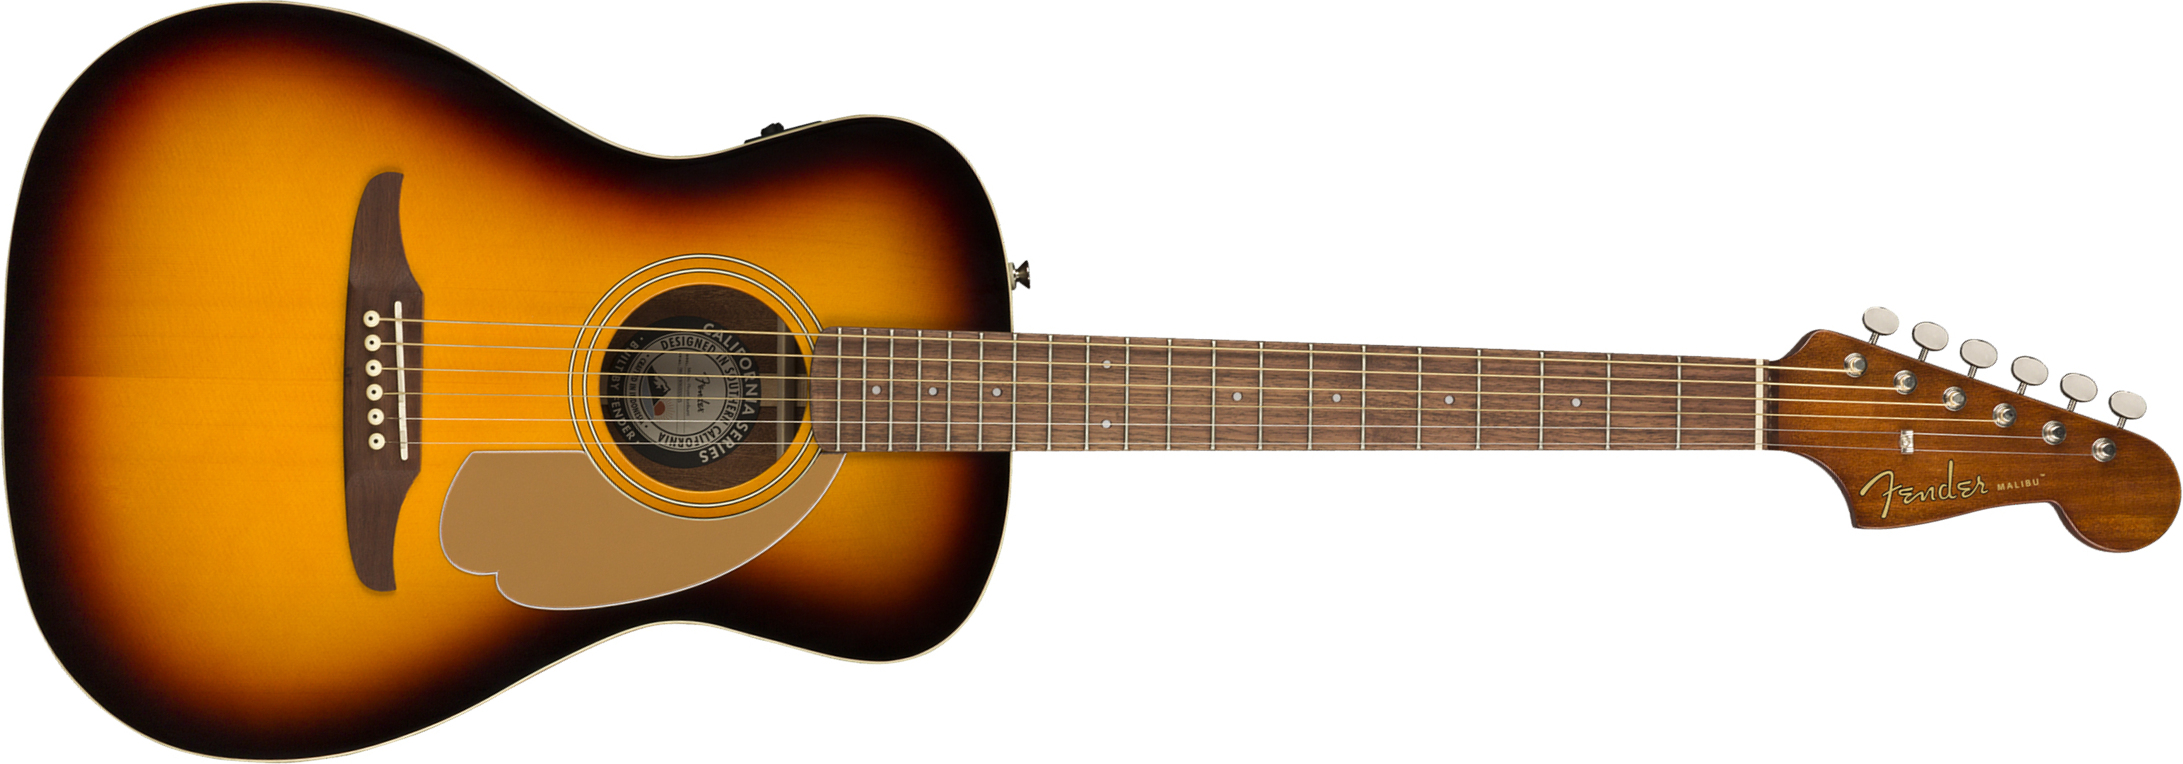 Fender Malibu Player Concert Epicea Acajou Wal - Sunburst - Electro acoustic guitar - Main picture